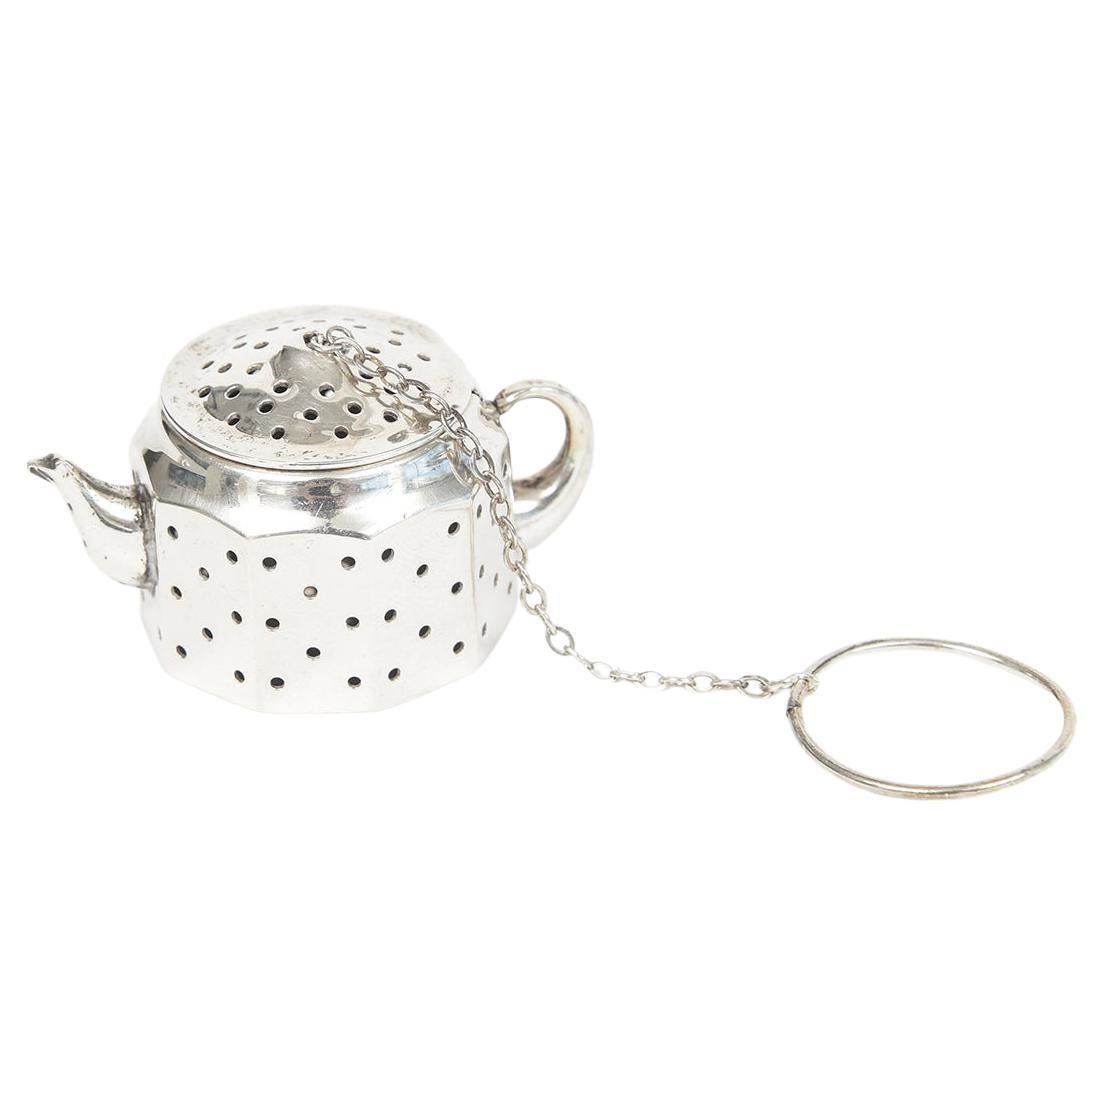 Amcraft - Théière figurative en argent sterling - Porte-bouilloire à boule de thé - Traversin